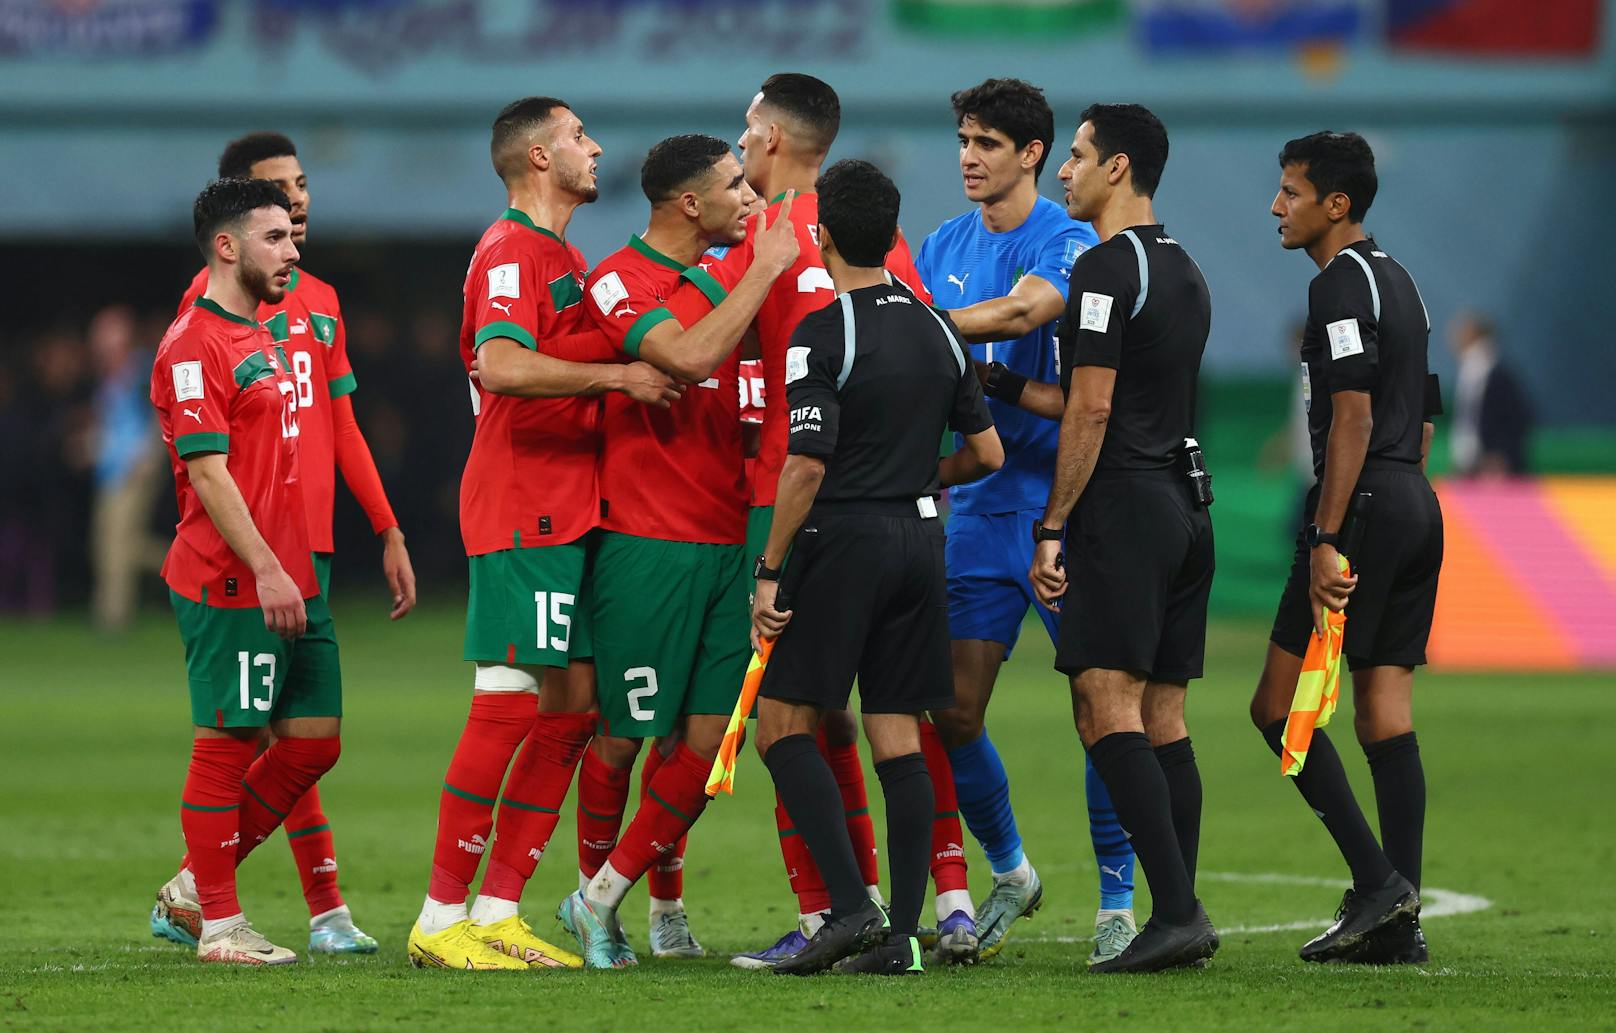 Marokko ging nach dem Spiel auf den Schiri los